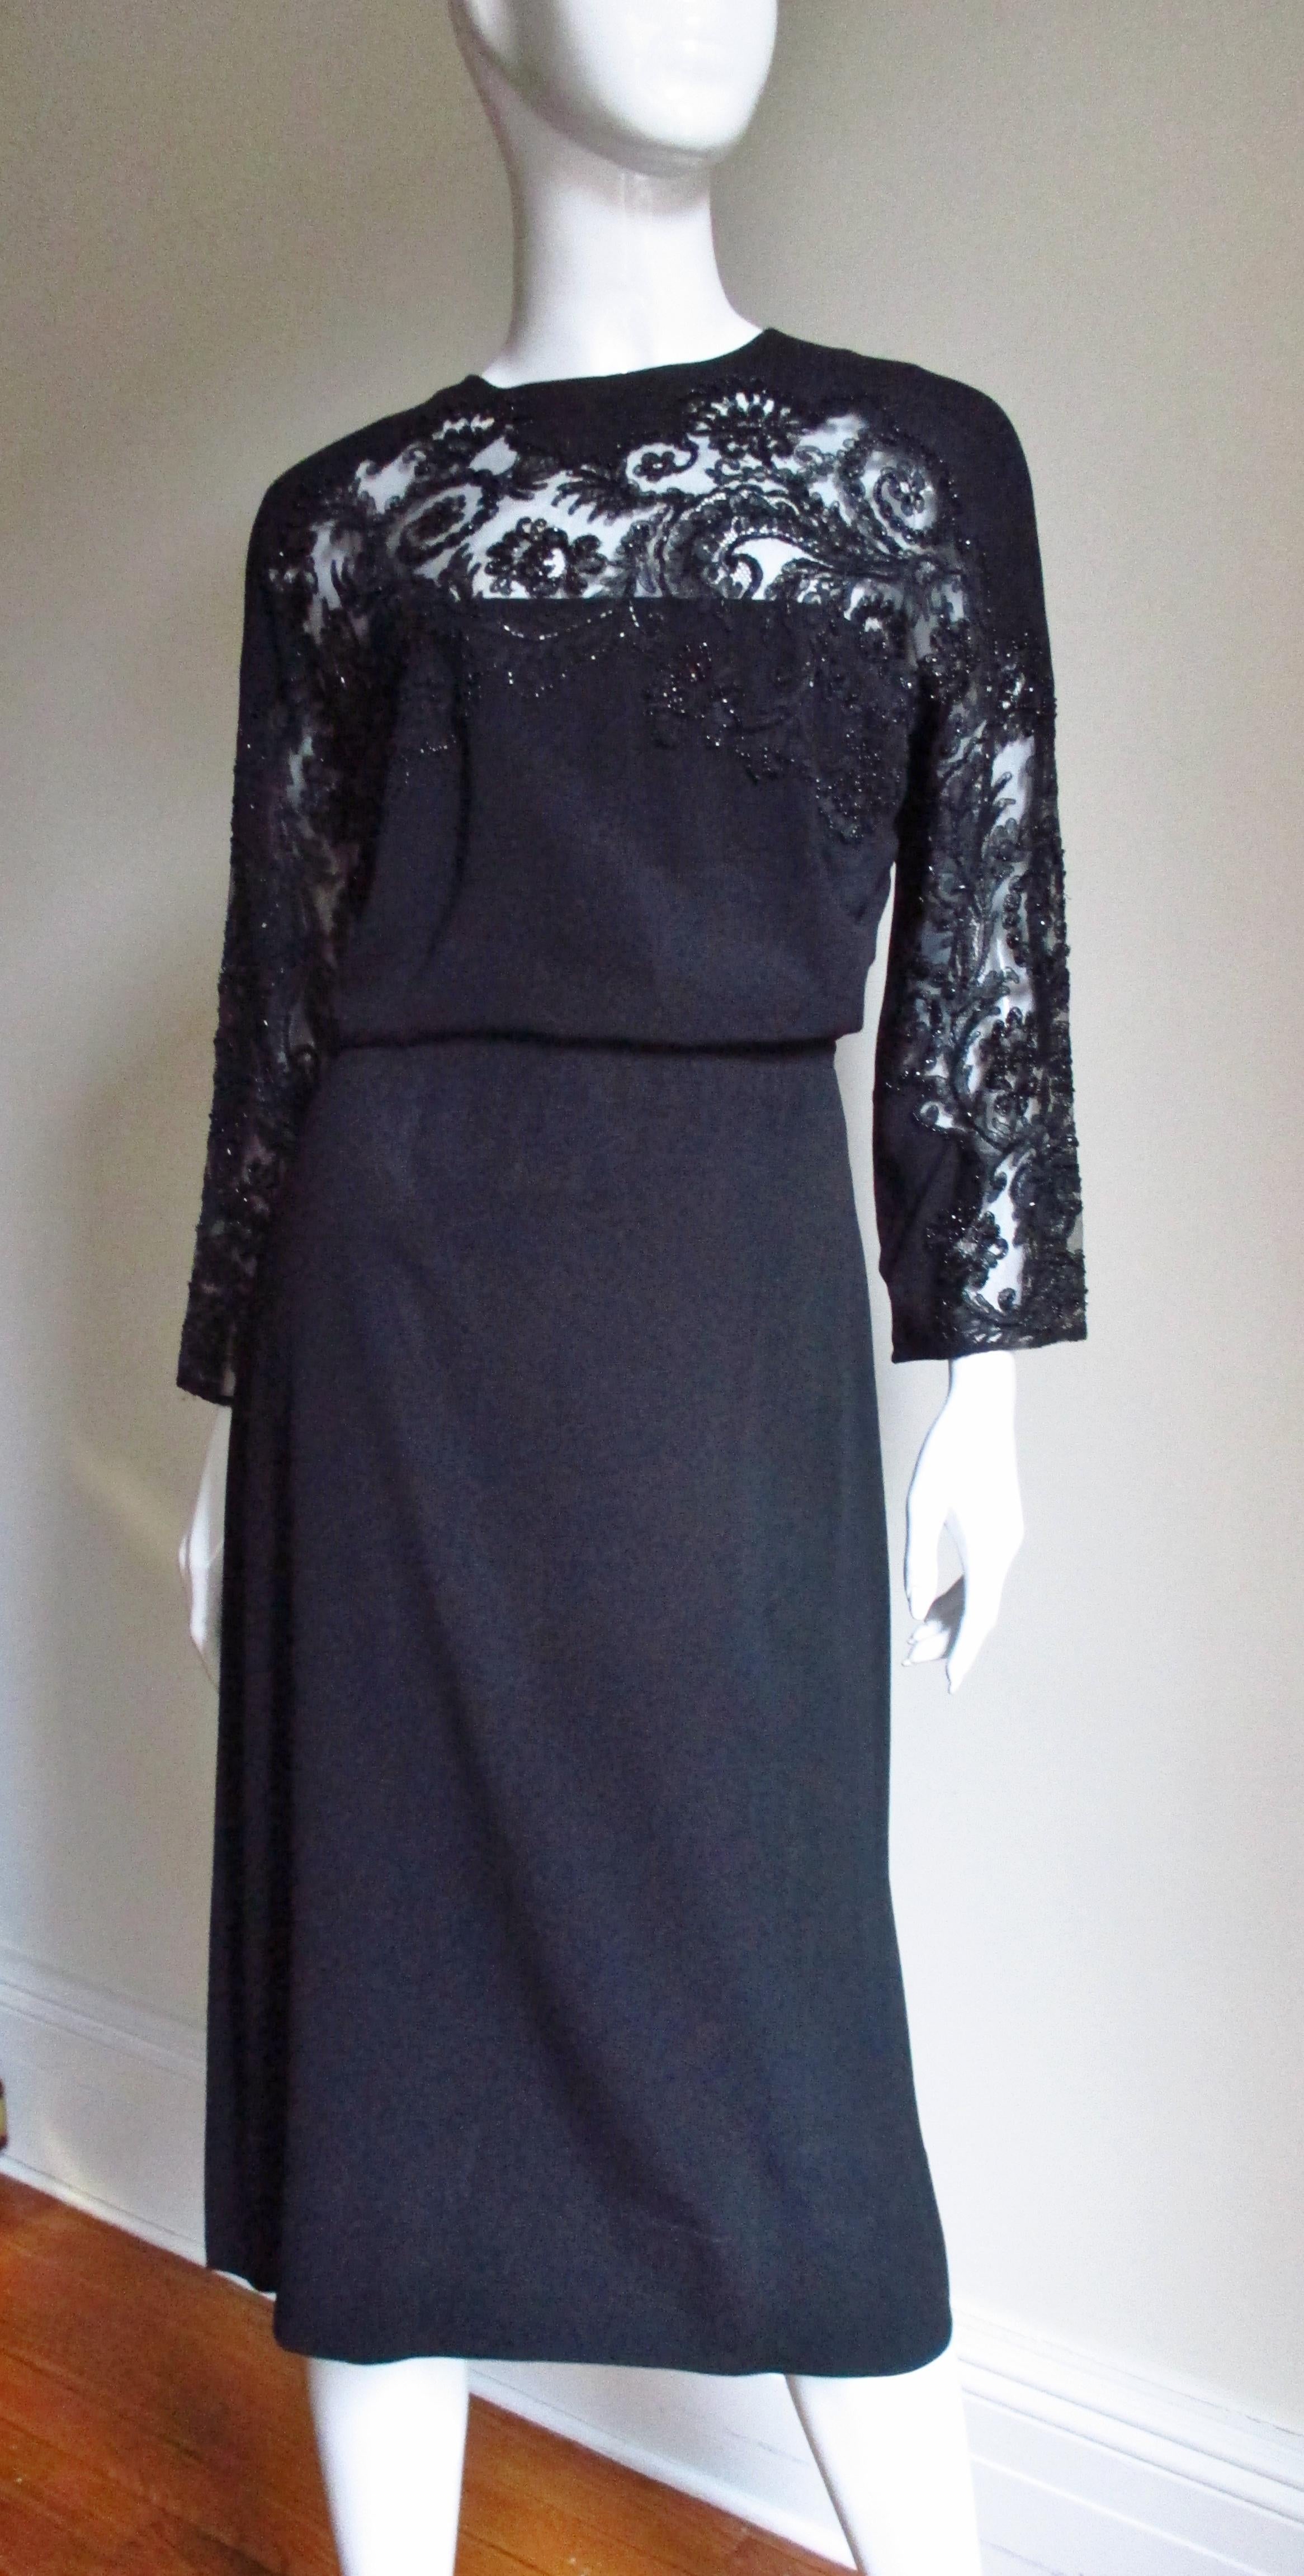 Ein schönes schwarzes Seidenkleid aus den 1940er Jahren von Eisenberg Originals. Es hat einen Rundhalsausschnitt, lange Ärmel und einen atemberaubenden, detailreichen Einsatz aus glasperlenbesetzter Spitze über der Brust und entlang der Vorderseite